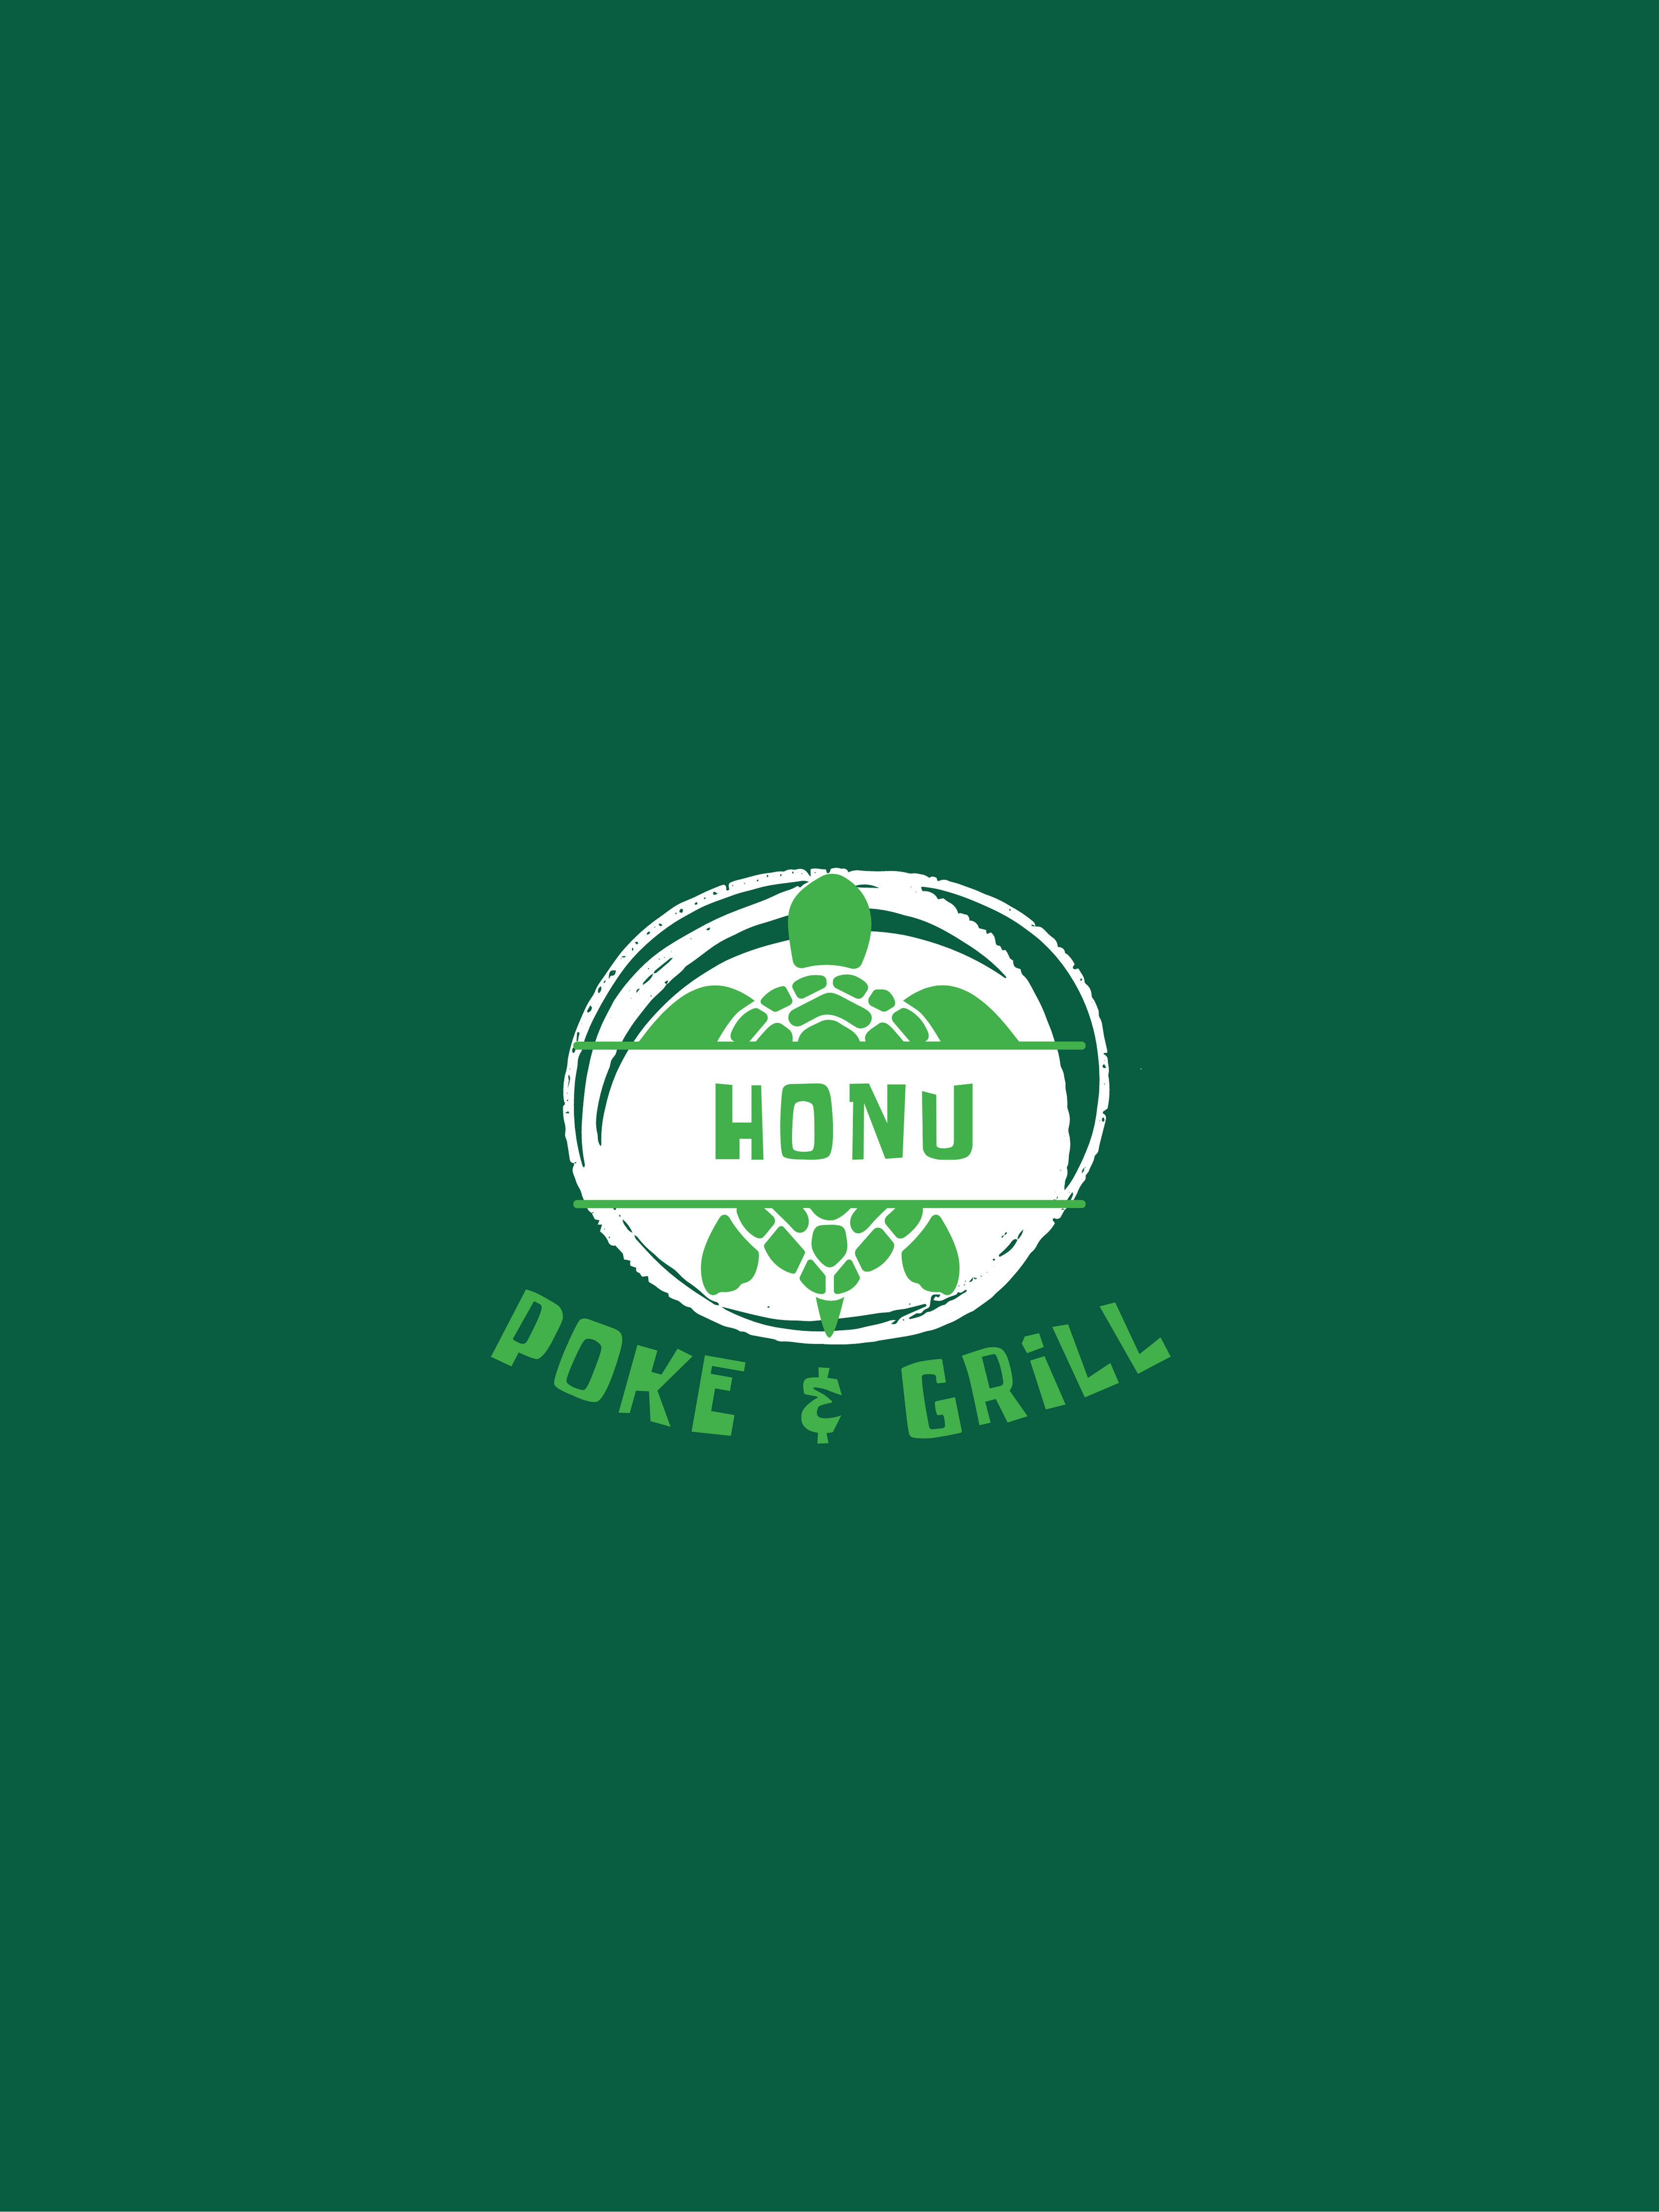 Honu Poke and Grill Logo